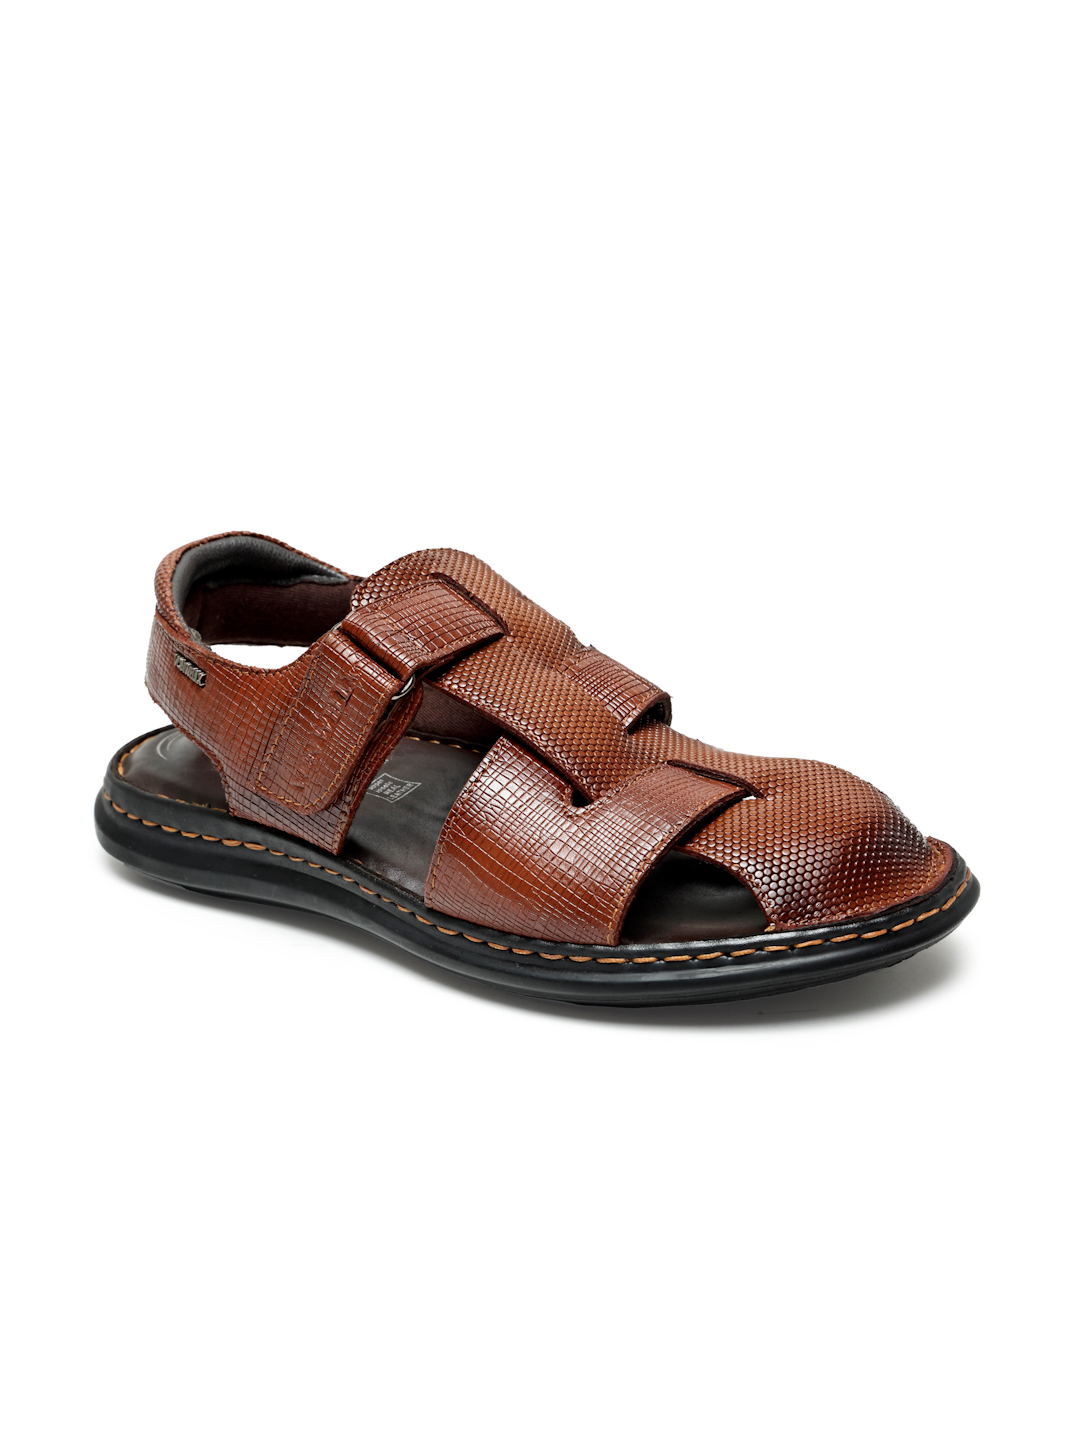 Buy Von Wellx Germany Comfort Men's Tan Sandals Morgen Online in Visakhapatnam